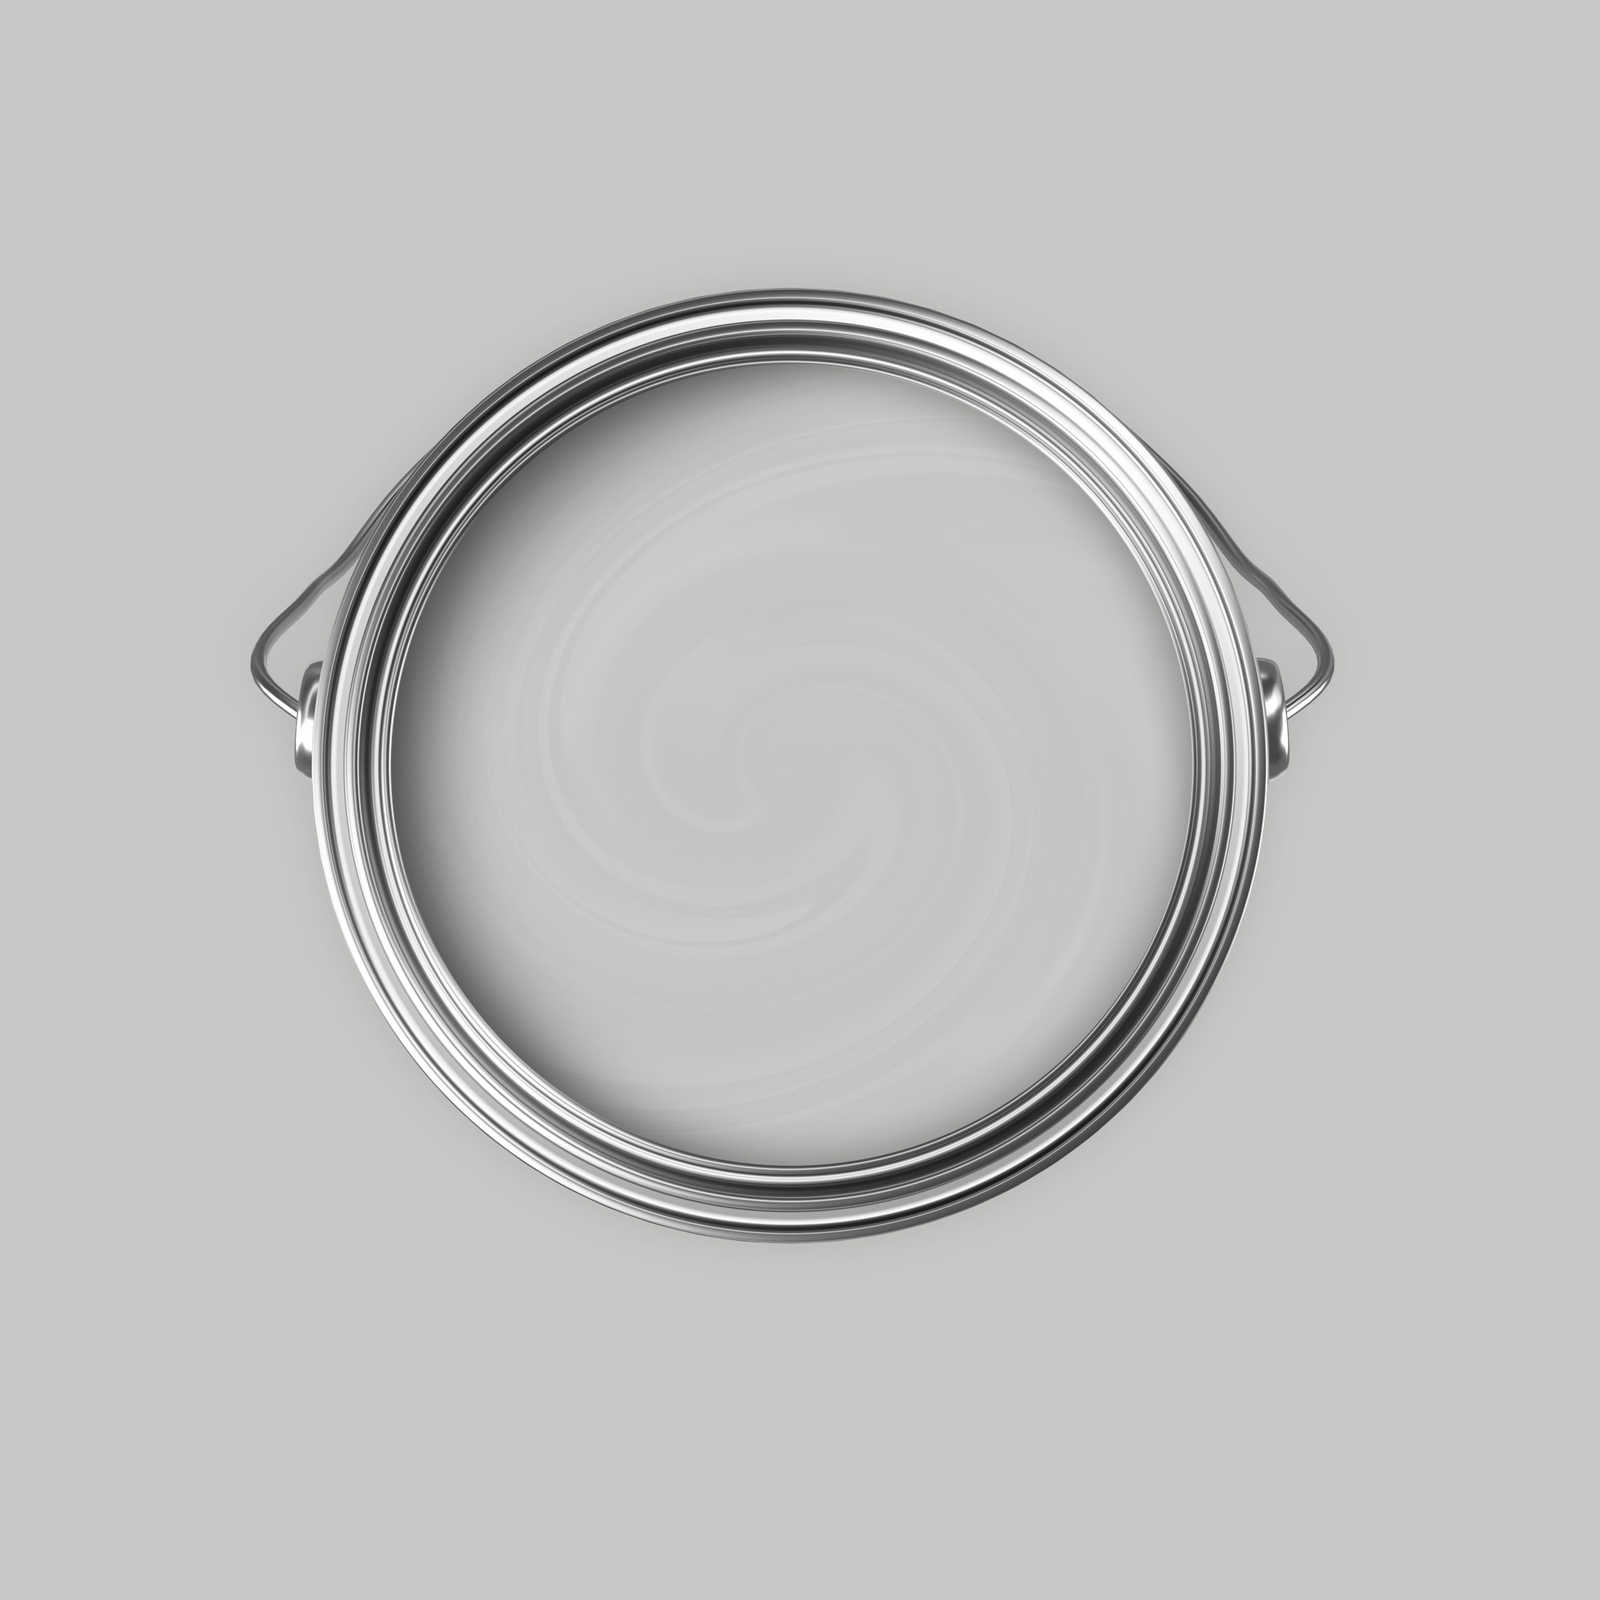             Premium Muurverf huiselijk zilver »Creamy Grey« NW109 – 5 liter
        